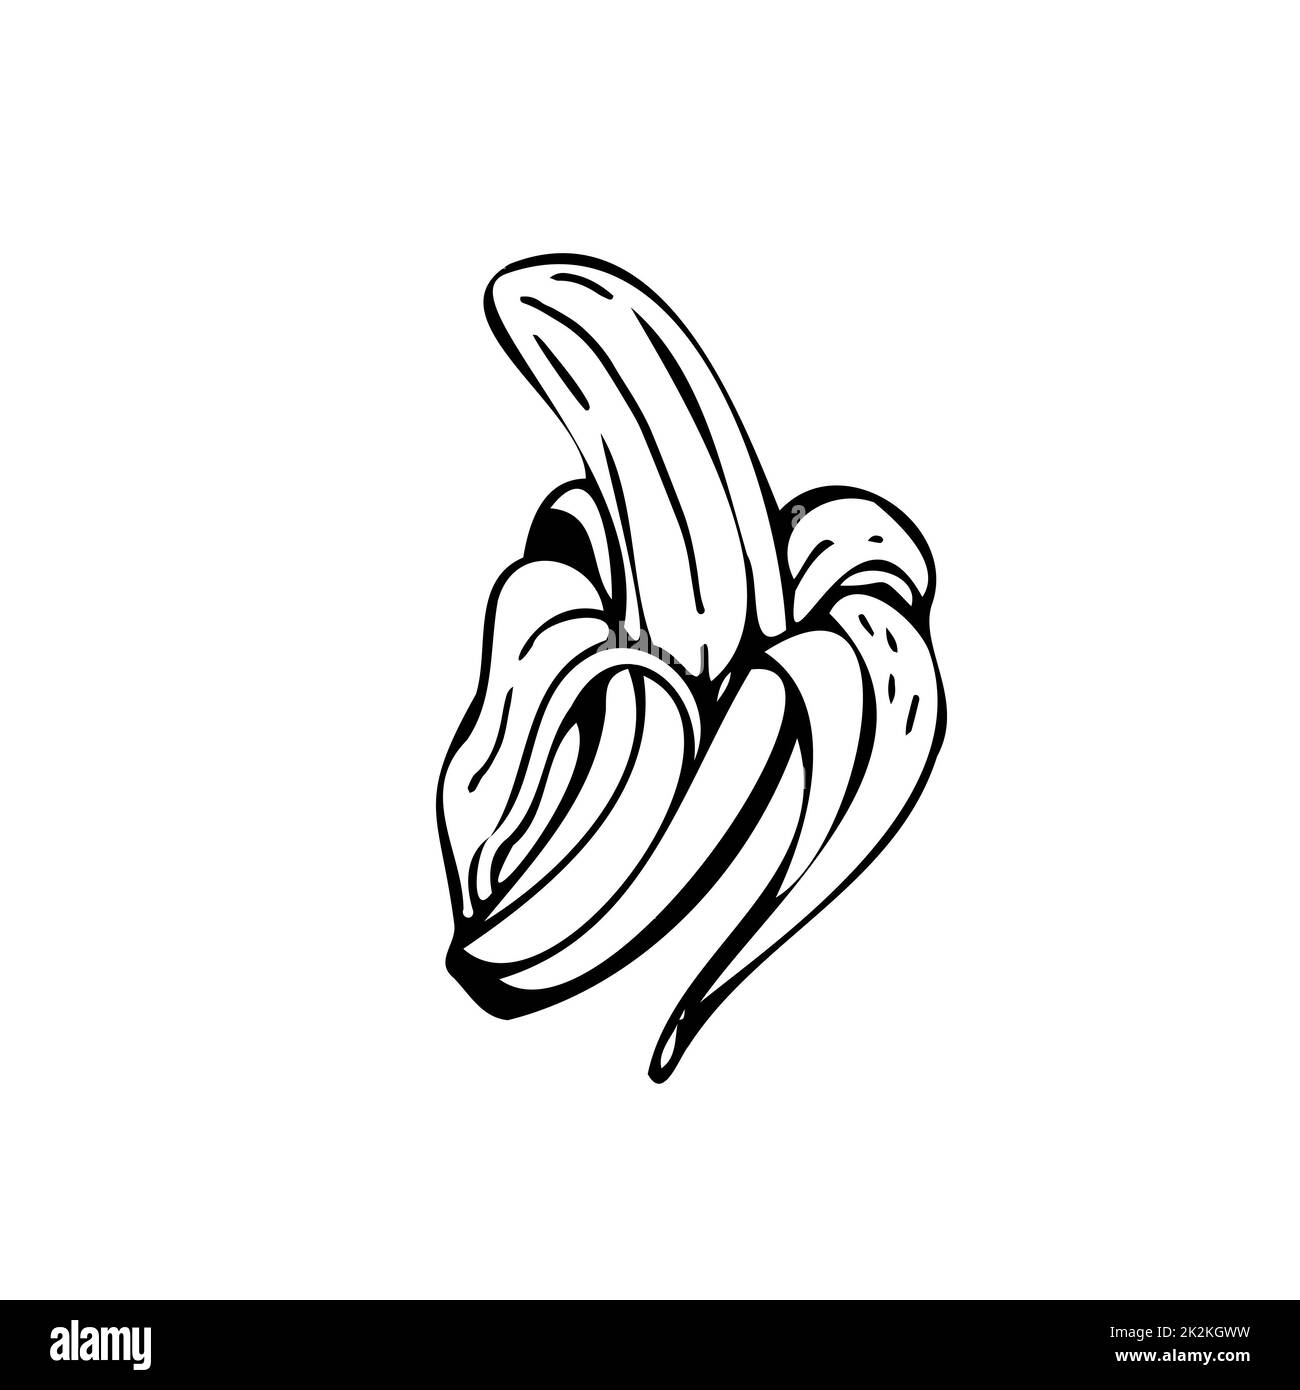 Banana sottili linee nere su sfondo bianco - Vector Foto Stock